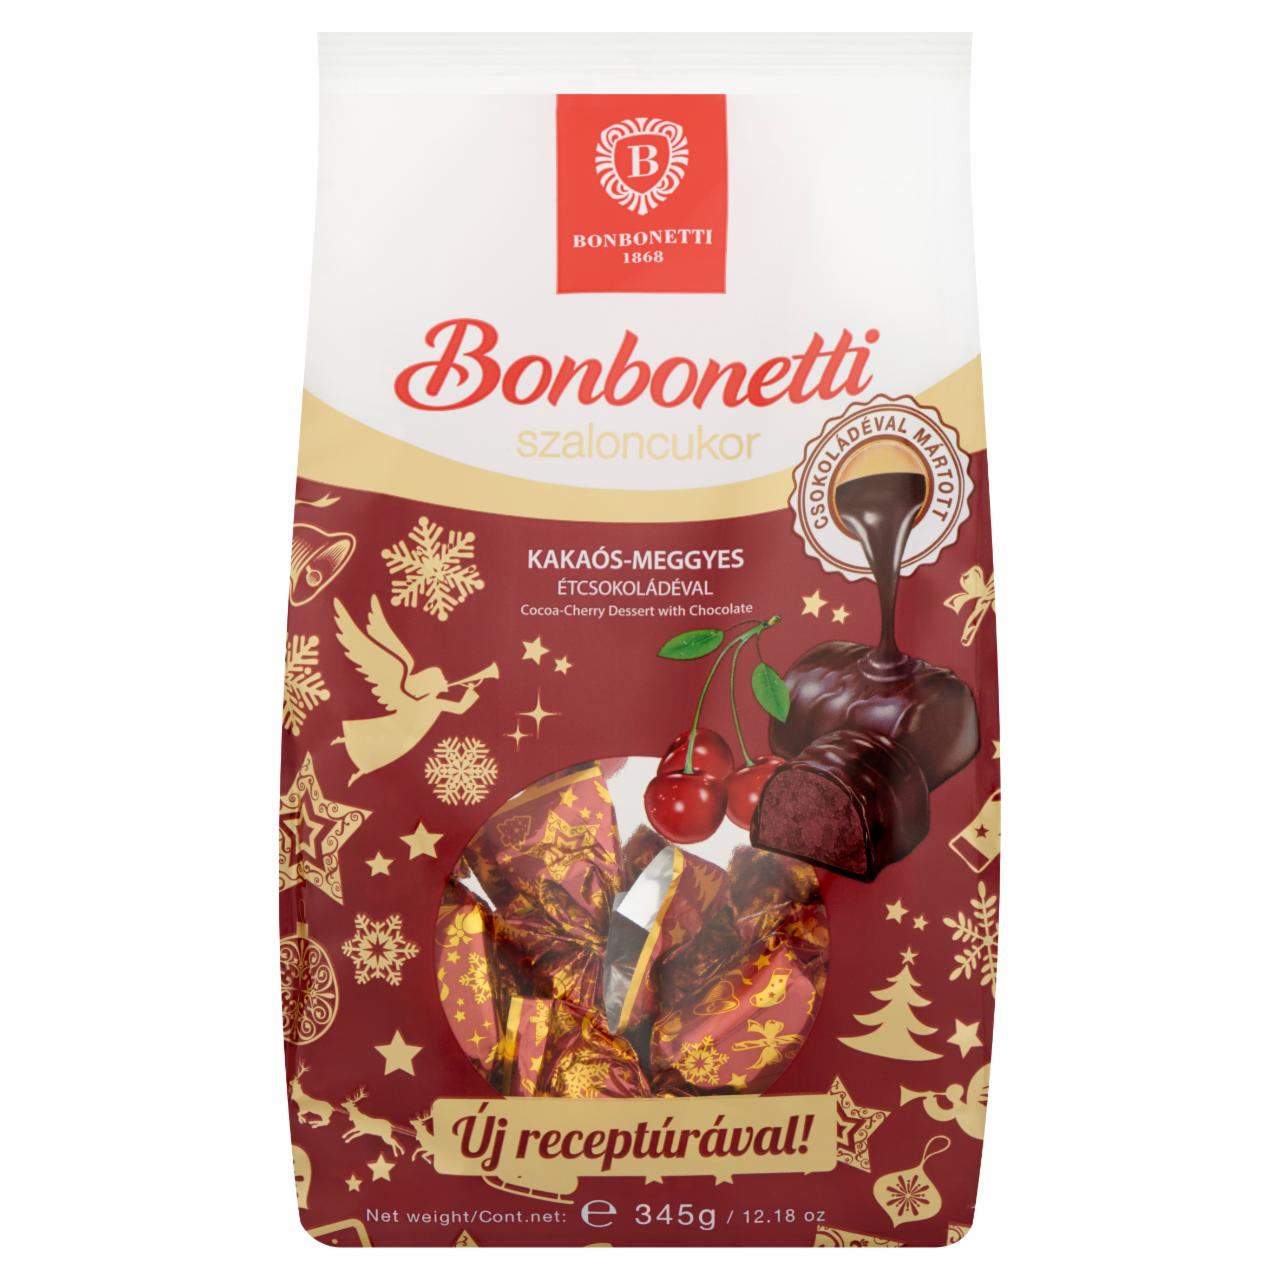 Képek - Bonbonetti étcsokoládéval mártott kakaós-meggyes szaloncukor 345 g